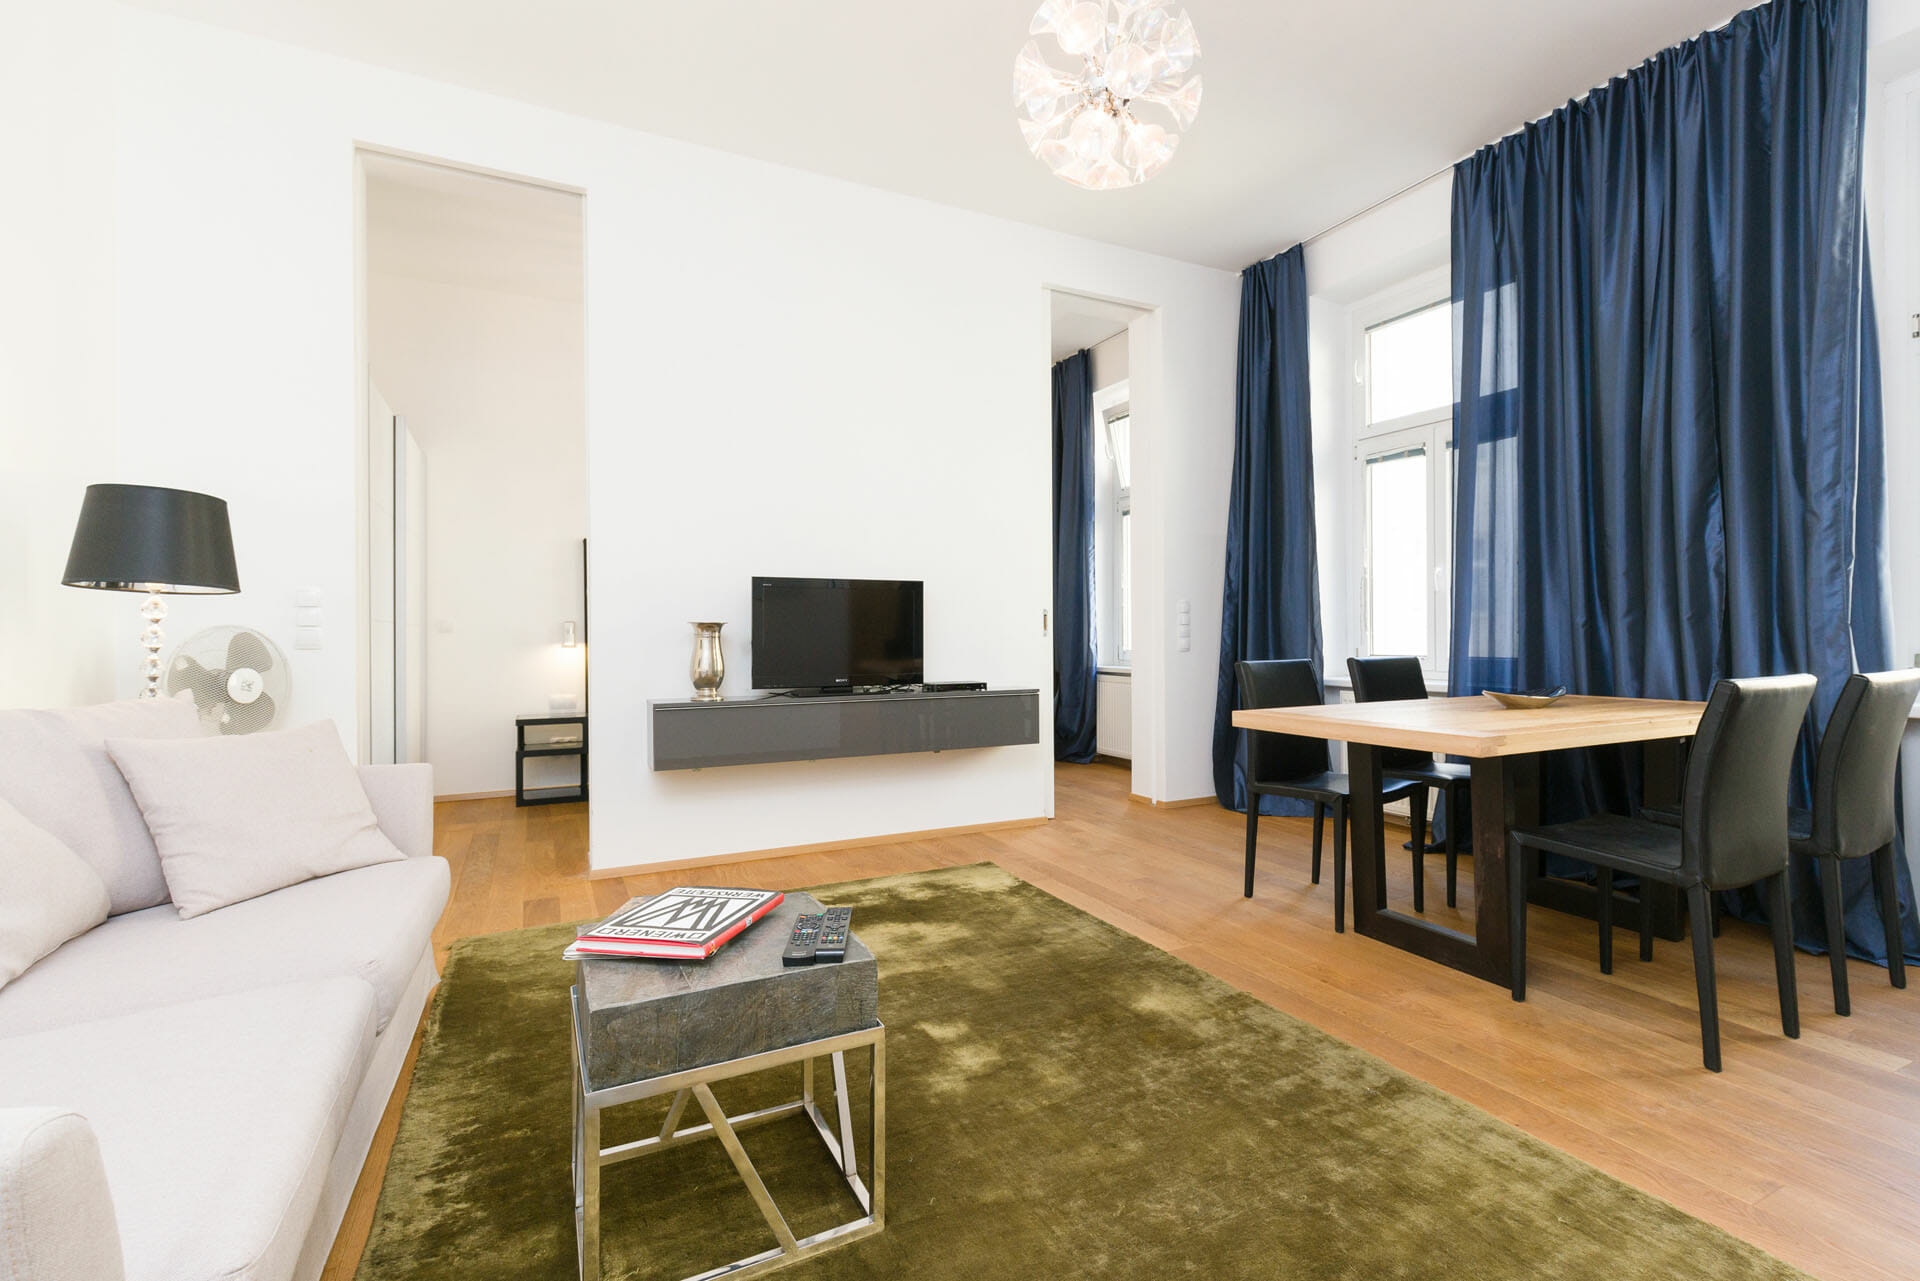 Prestige Apartments. Luxury Apartment in Vienna with premium furniture. Alser Strasse 14. Apartments size in m²: 49
District: 1090 Alsergrund
Bedroom: 1